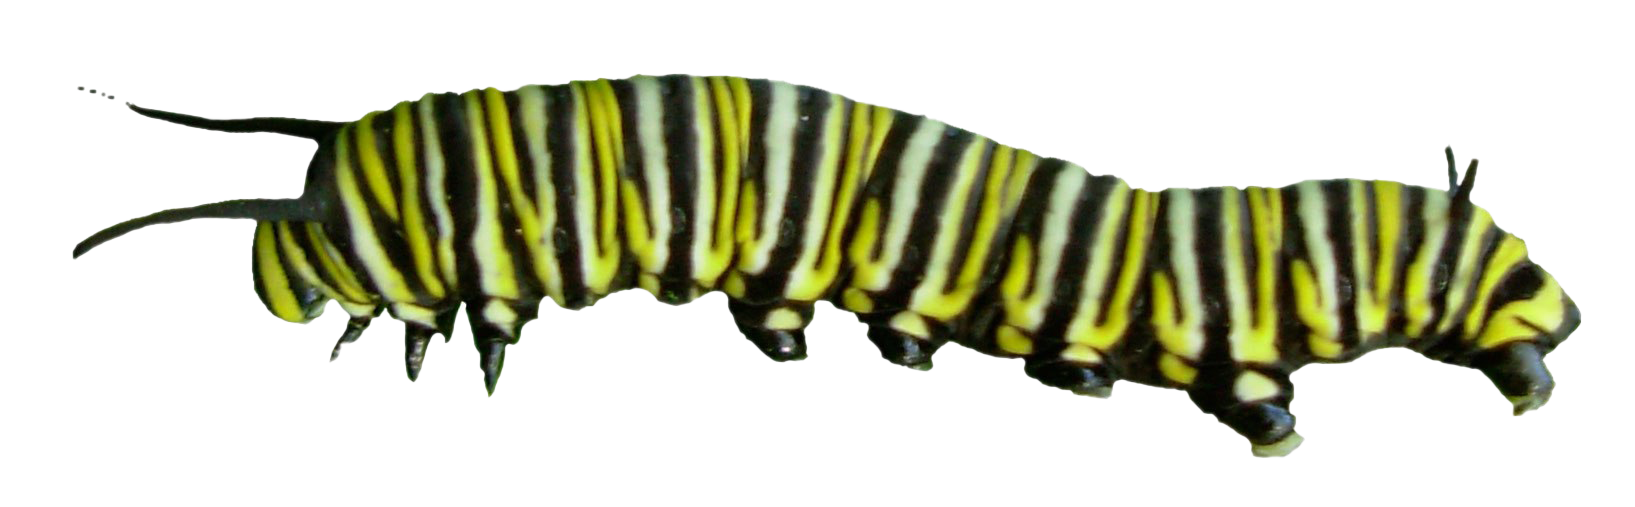 Caterpillar PNG Photos